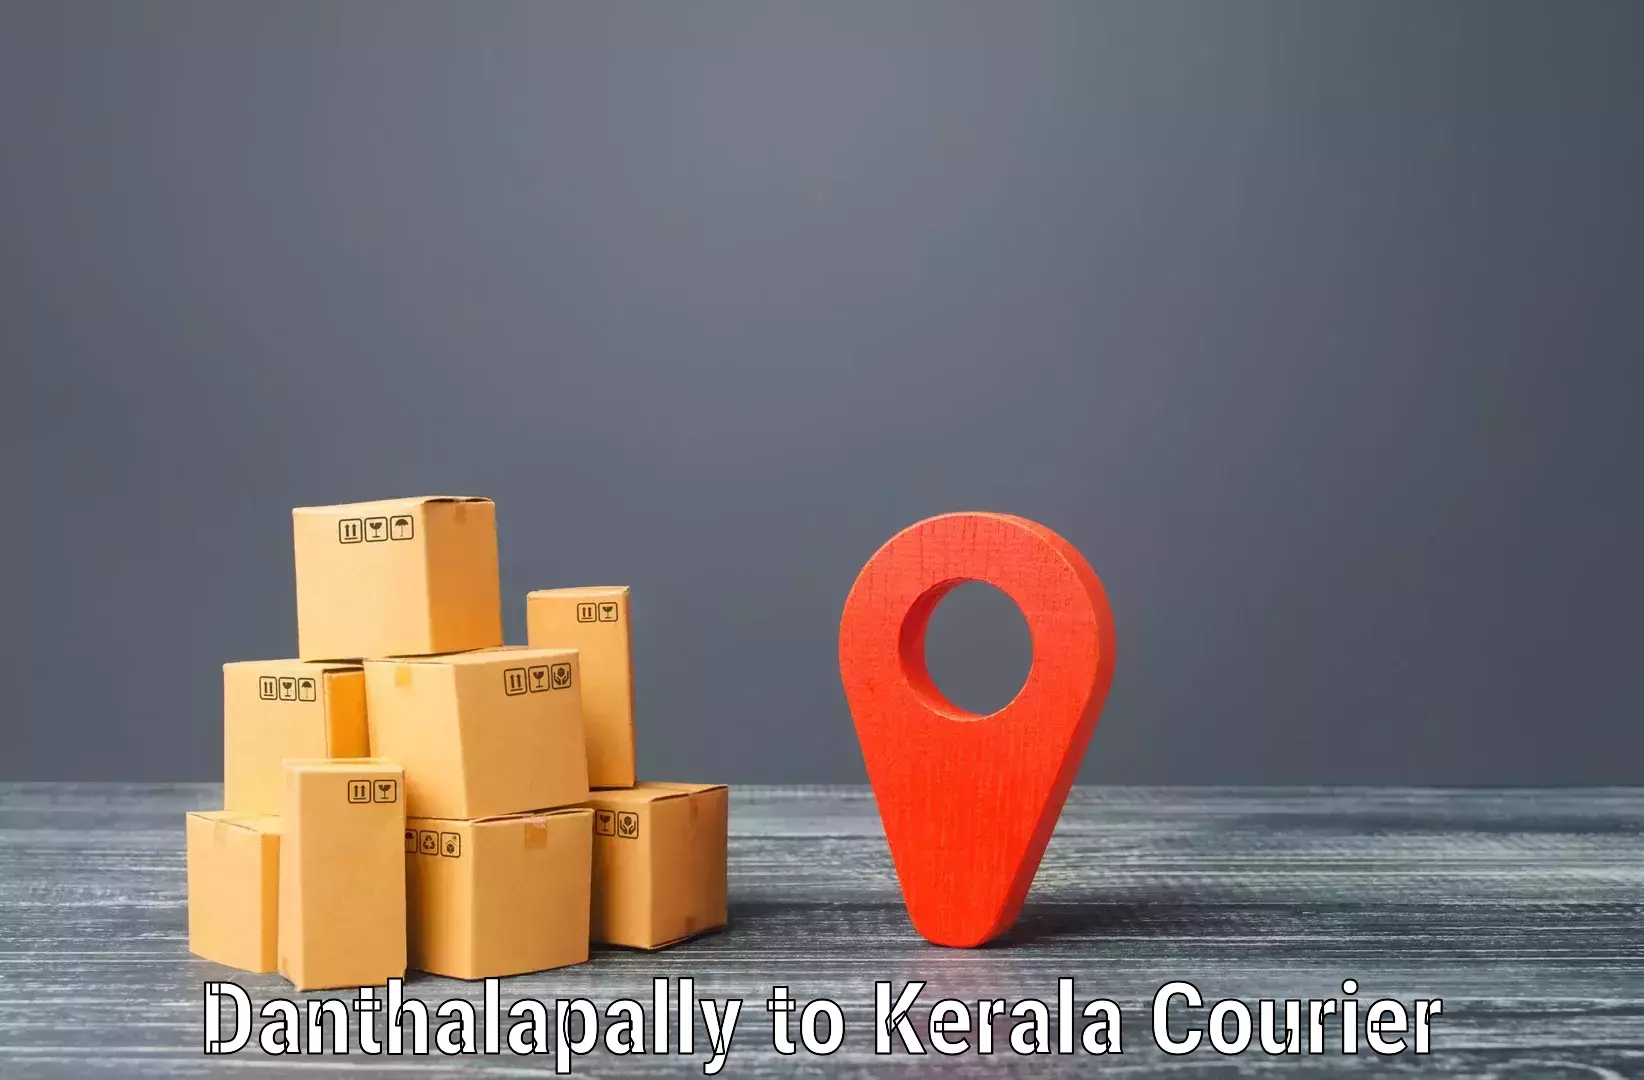 Cargo delivery service Danthalapally to Parakkadavu